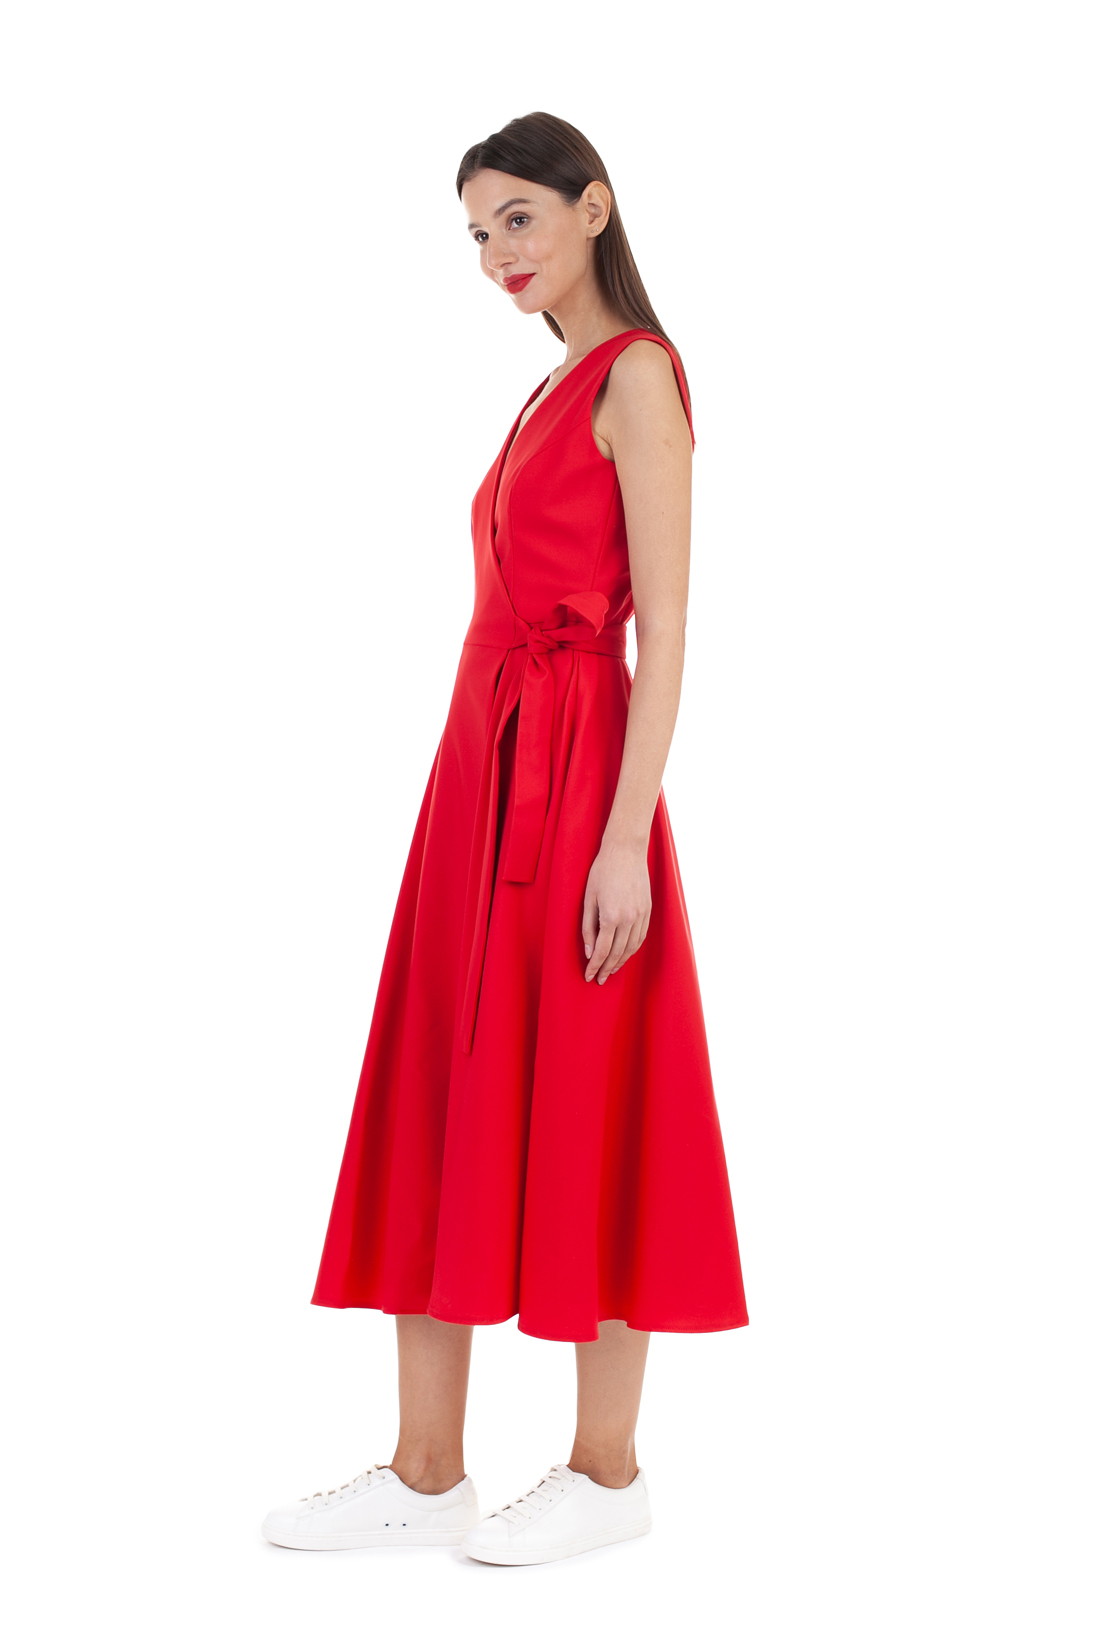 Платье без рукавов (арт. baon B458135), размер XS, цвет красный Платье без рукавов (арт. baon B458135) - фото 4